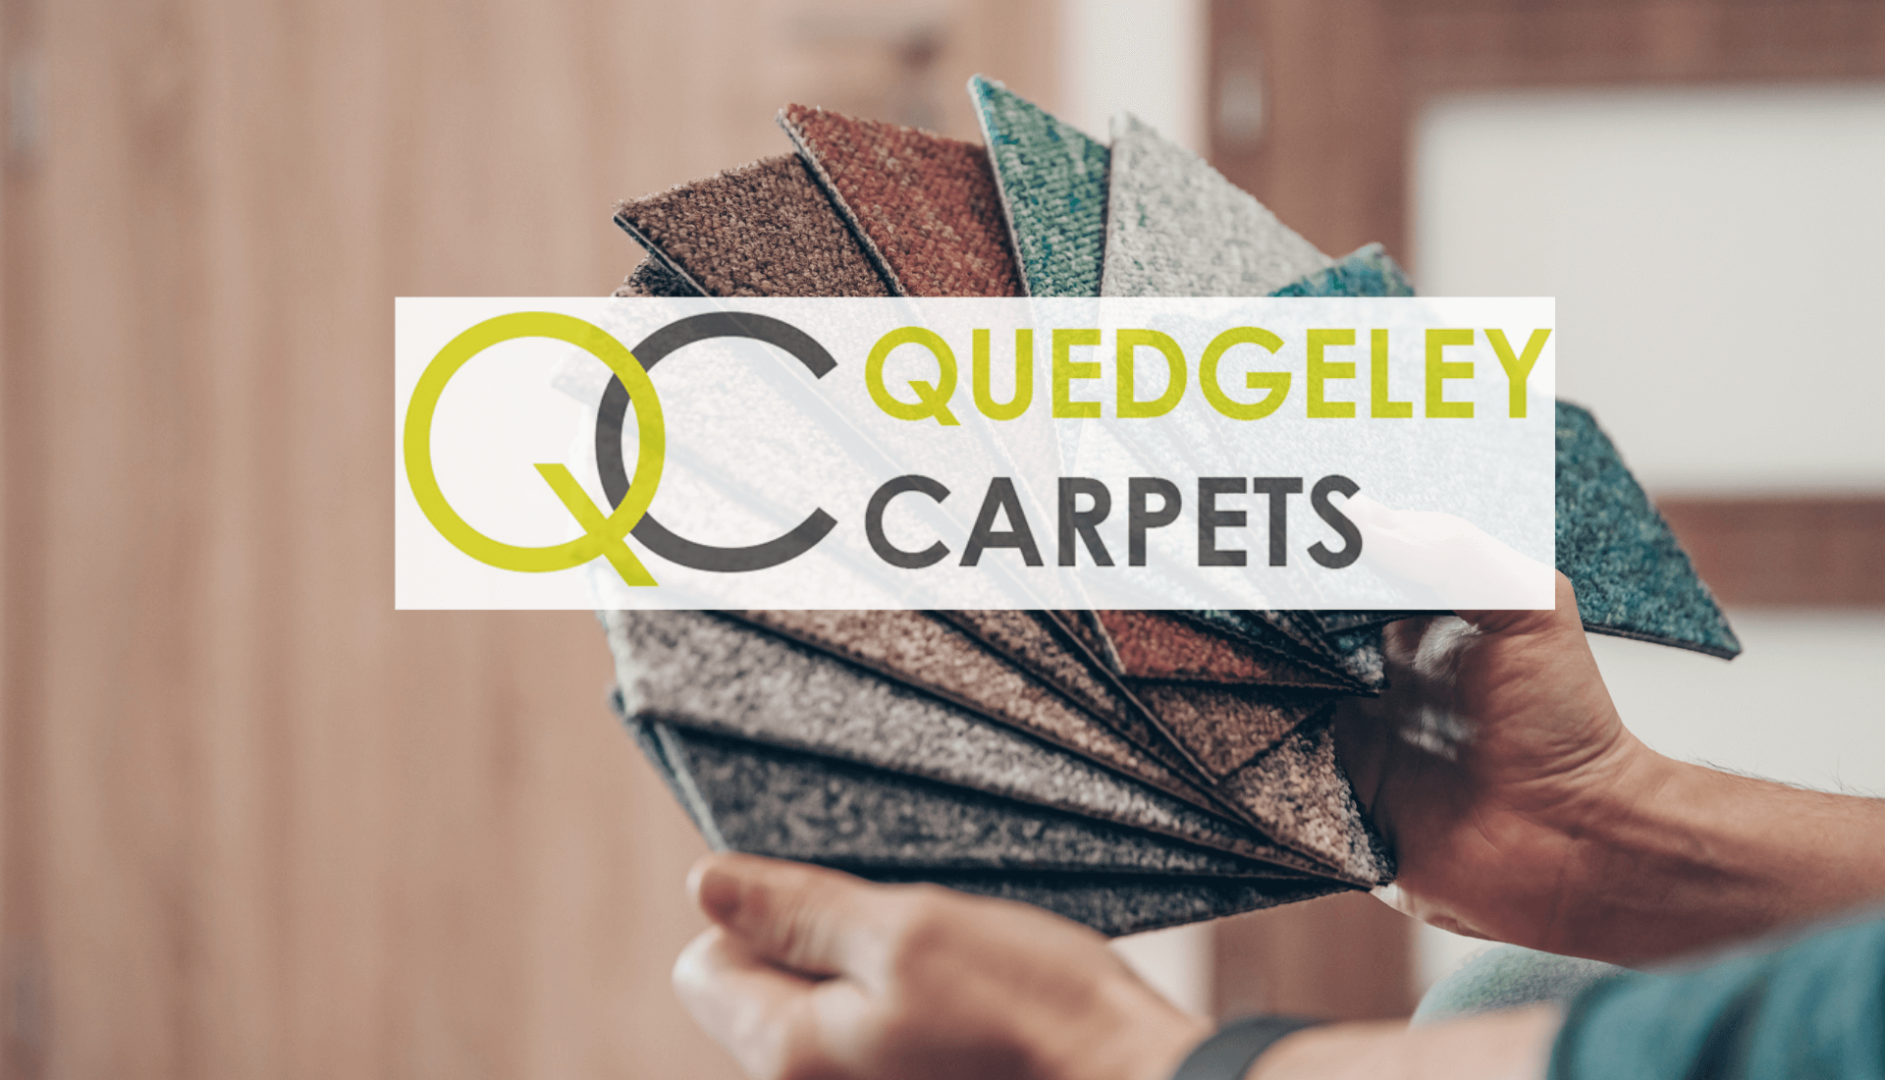 Quedgeley Carpets in Cheltenham